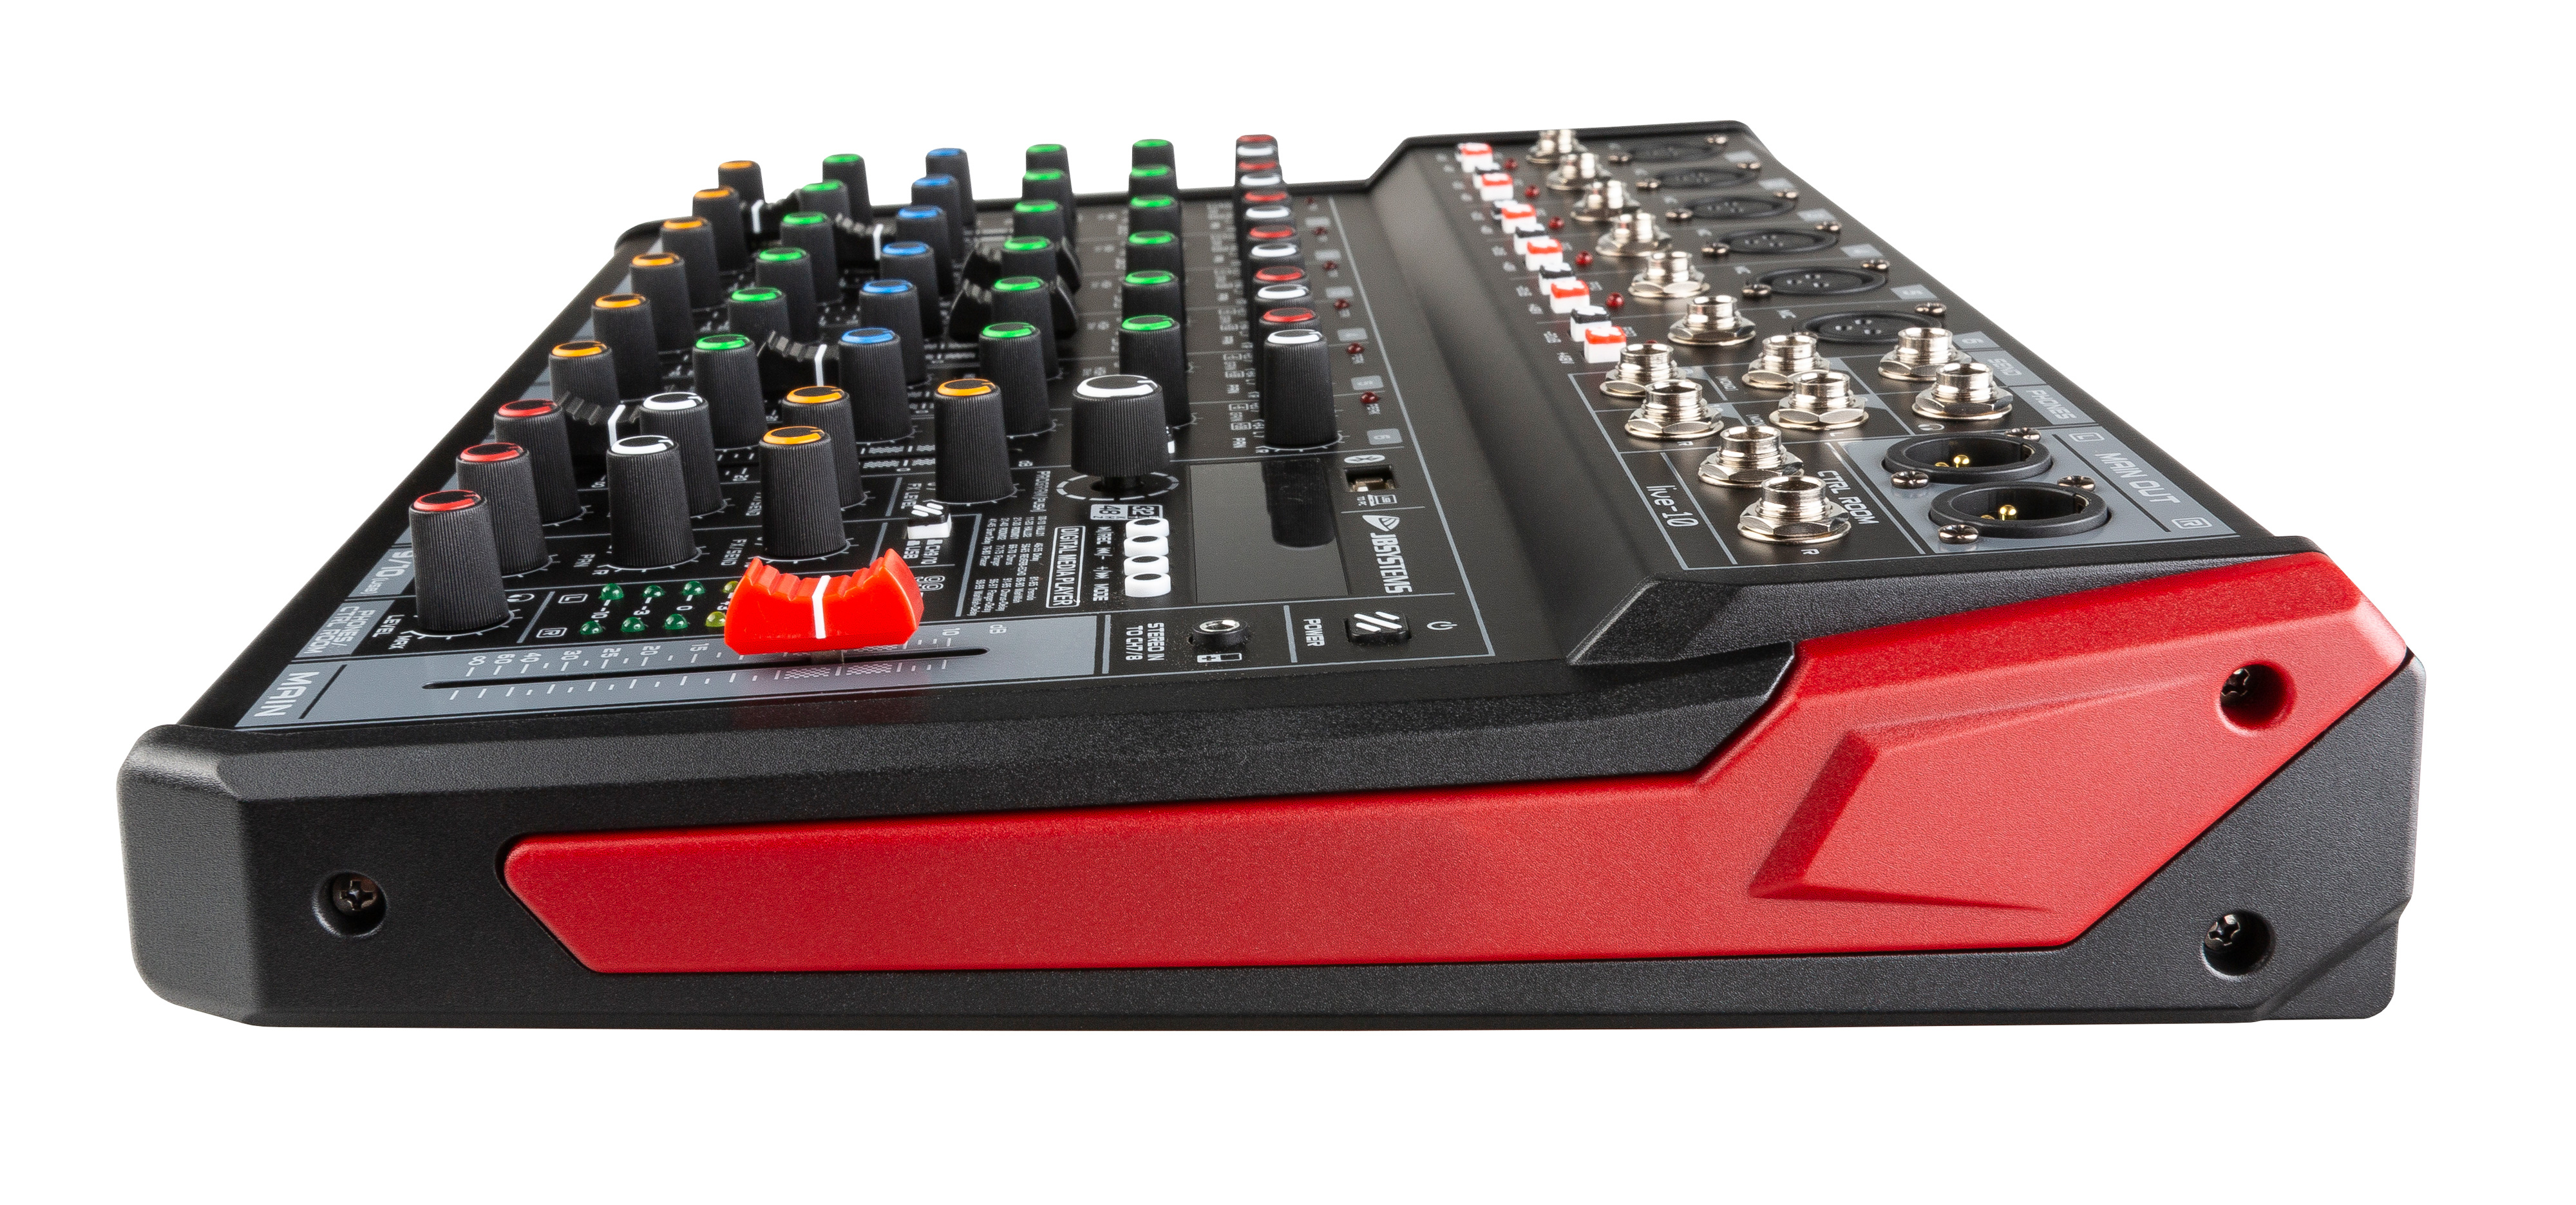 Équipement audio professionnel Table de mixage DJ non alimentée